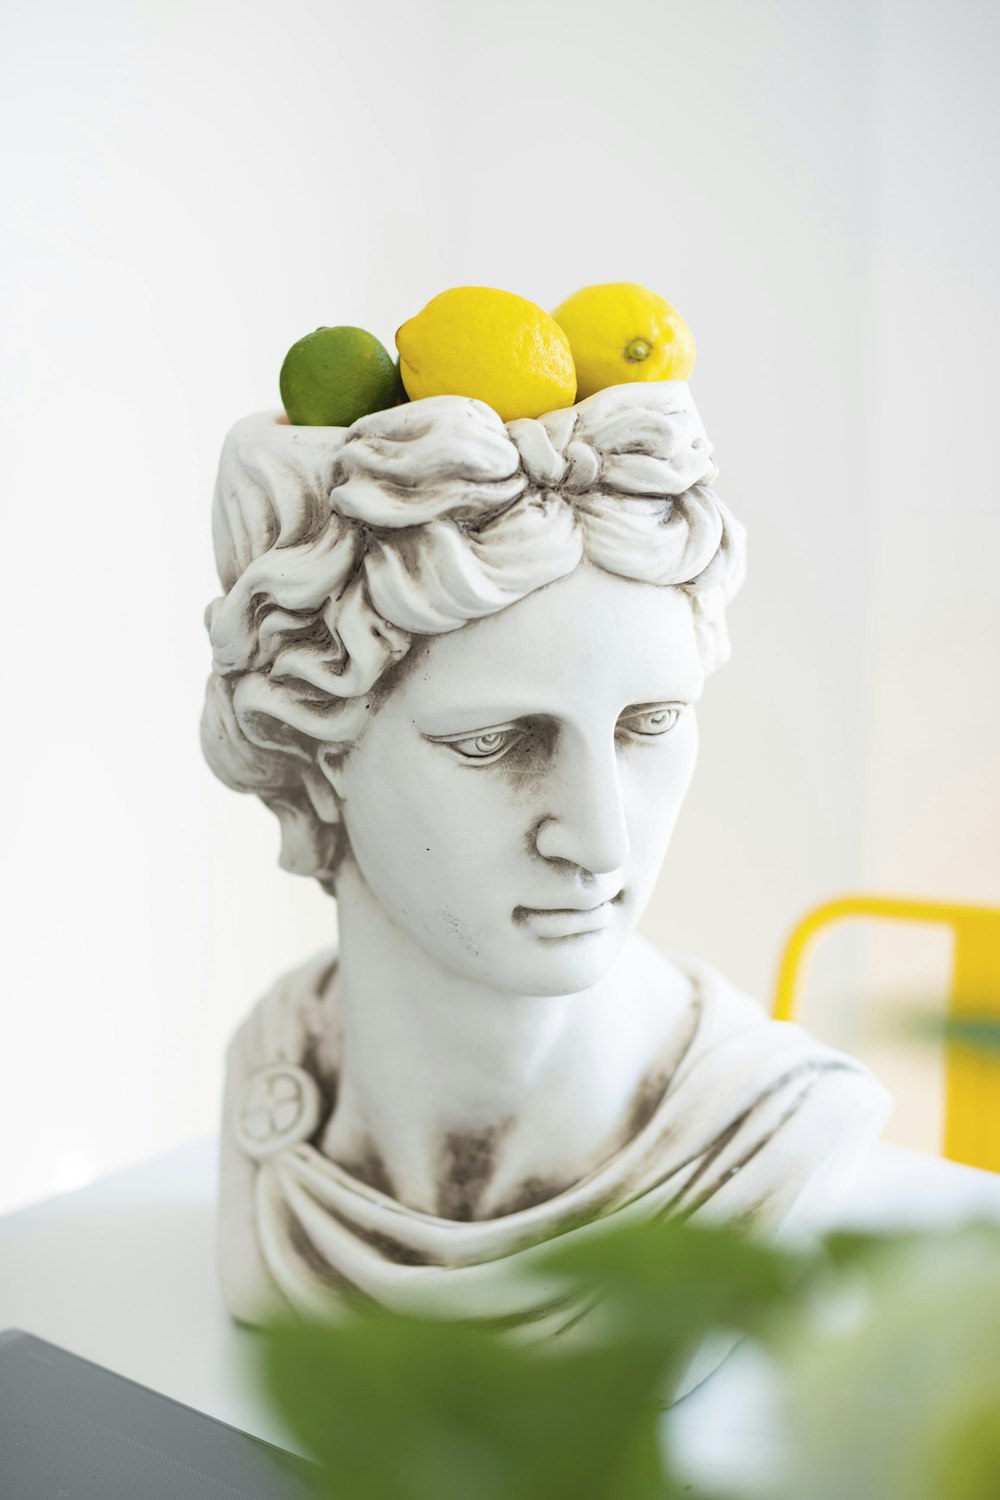 femme avec des fruits ronds jaunes sur la tête